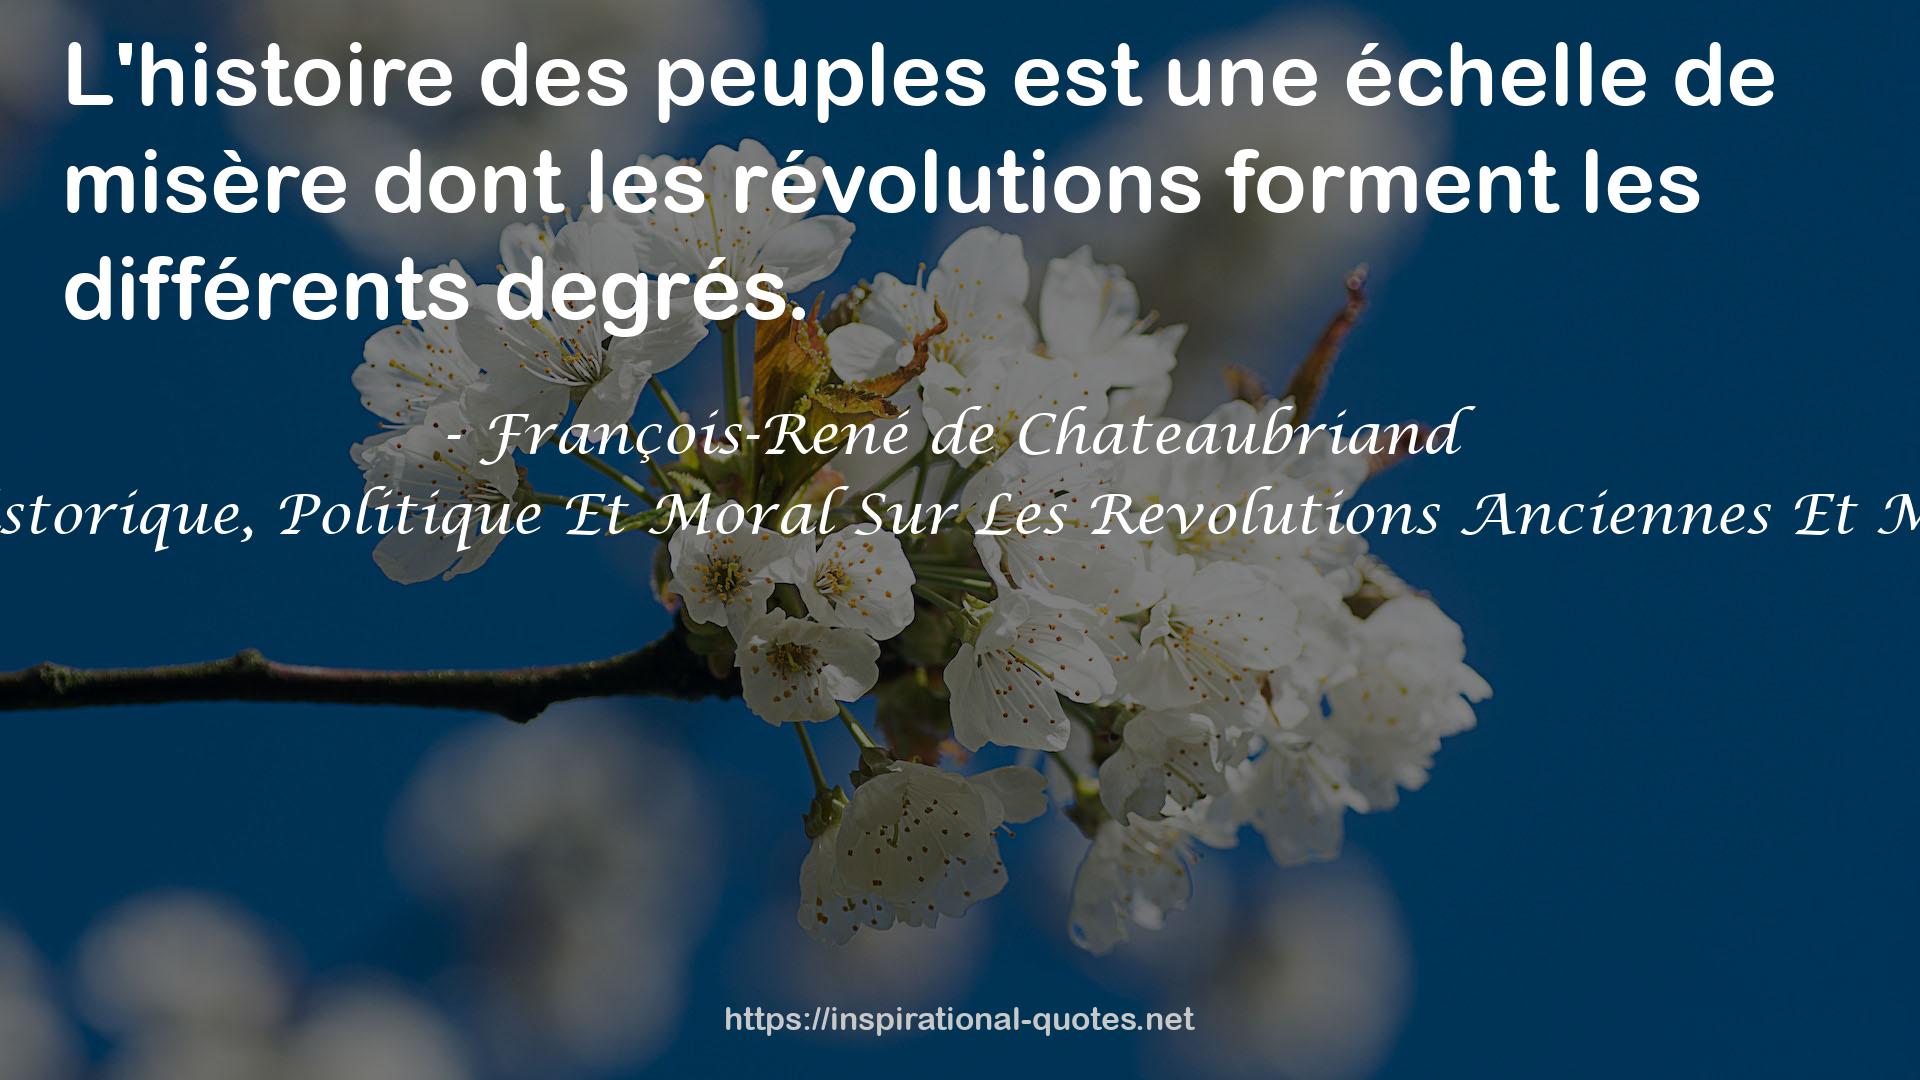 Essai Historique, Politique Et Moral Sur Les Revolutions Anciennes Et Modernes QUOTES